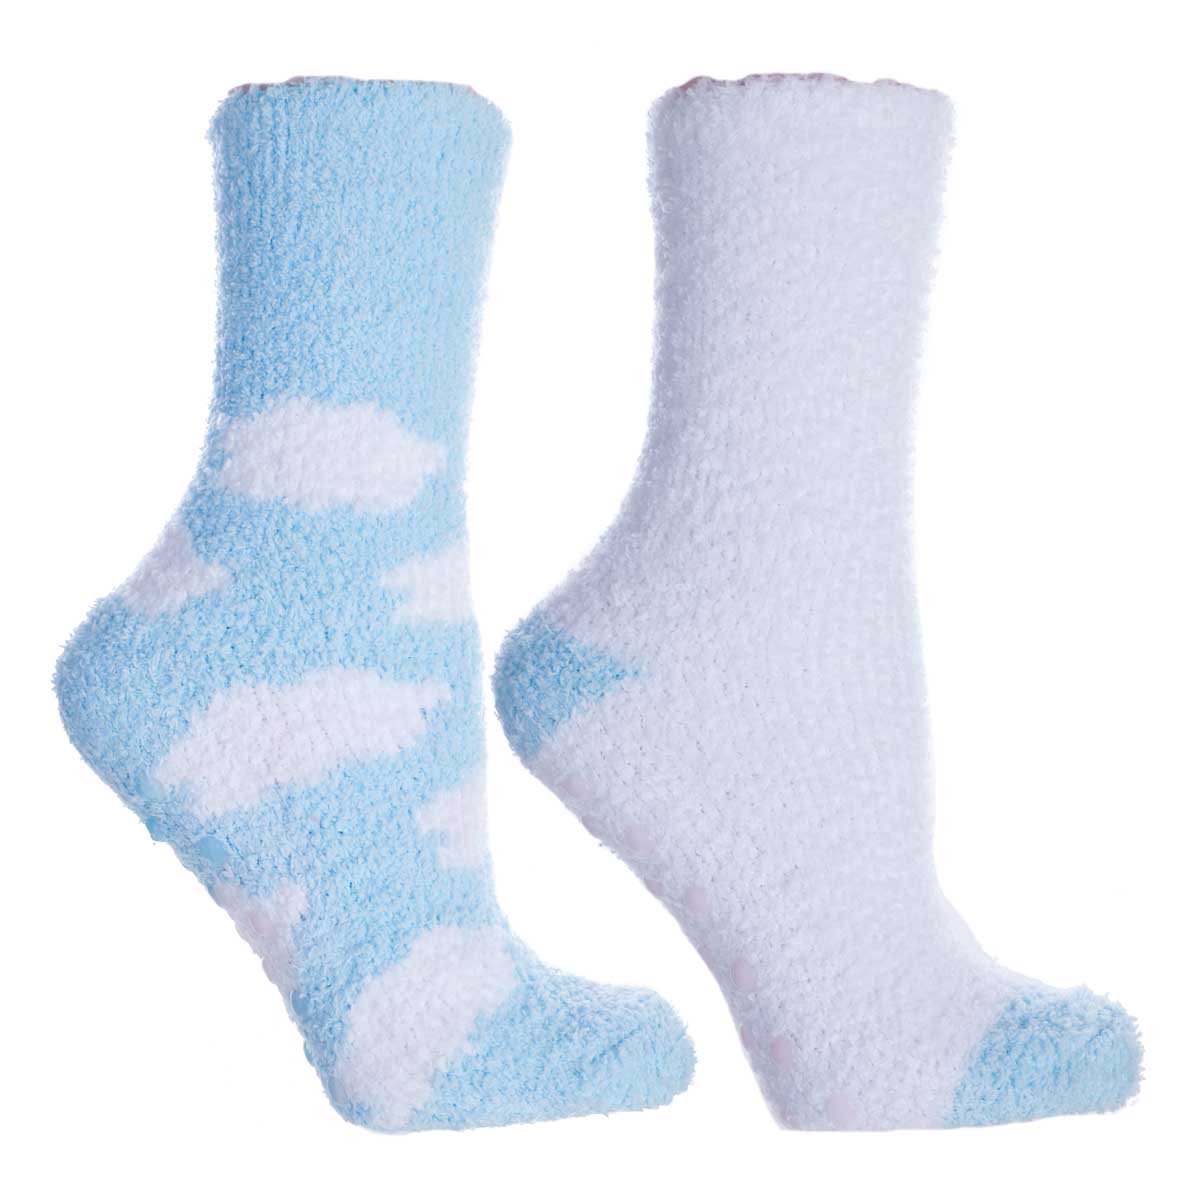 Women's Lavender Infused Slipper Socks, 2-Pair Pack with Lavender Sachet, 